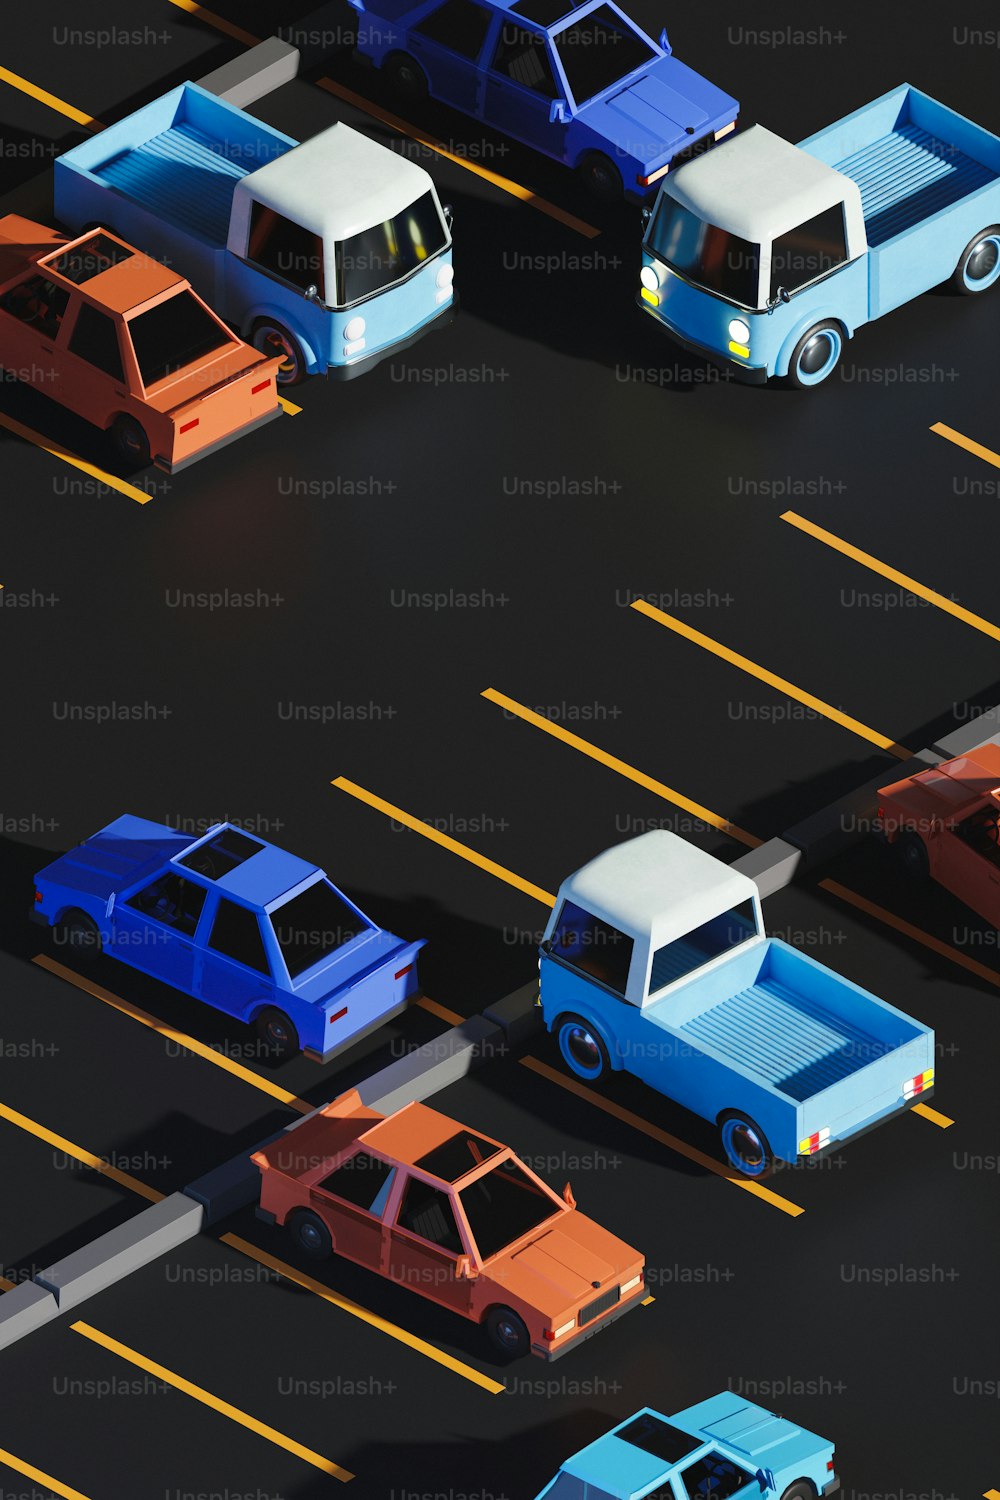 um grupo de carros estacionados em um estacionamento